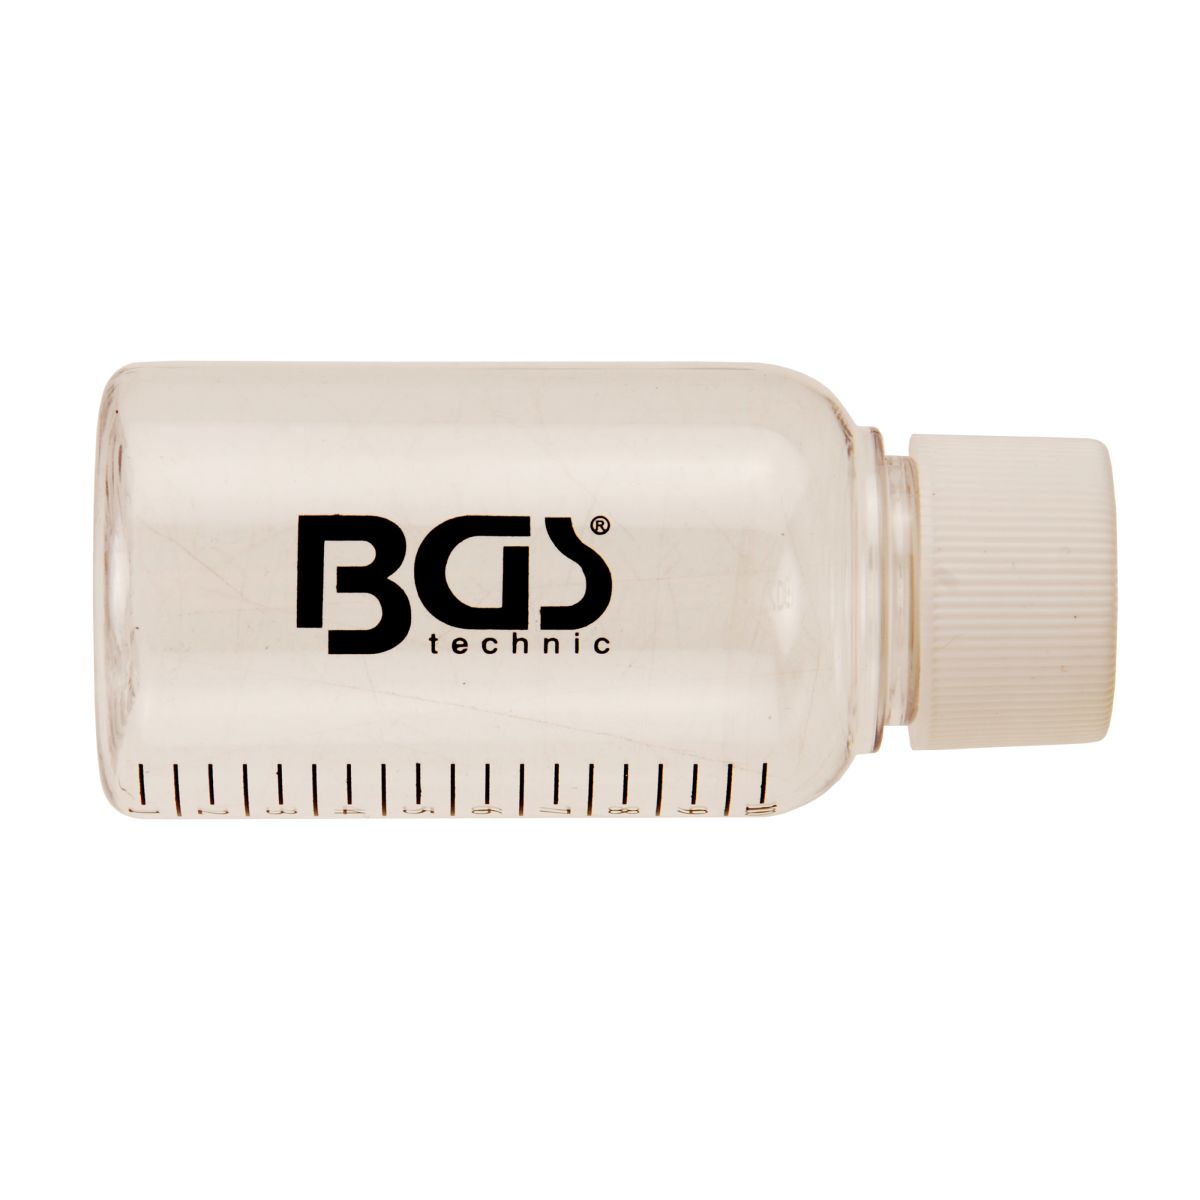 Botella de plástico para BGS 8101, 8102